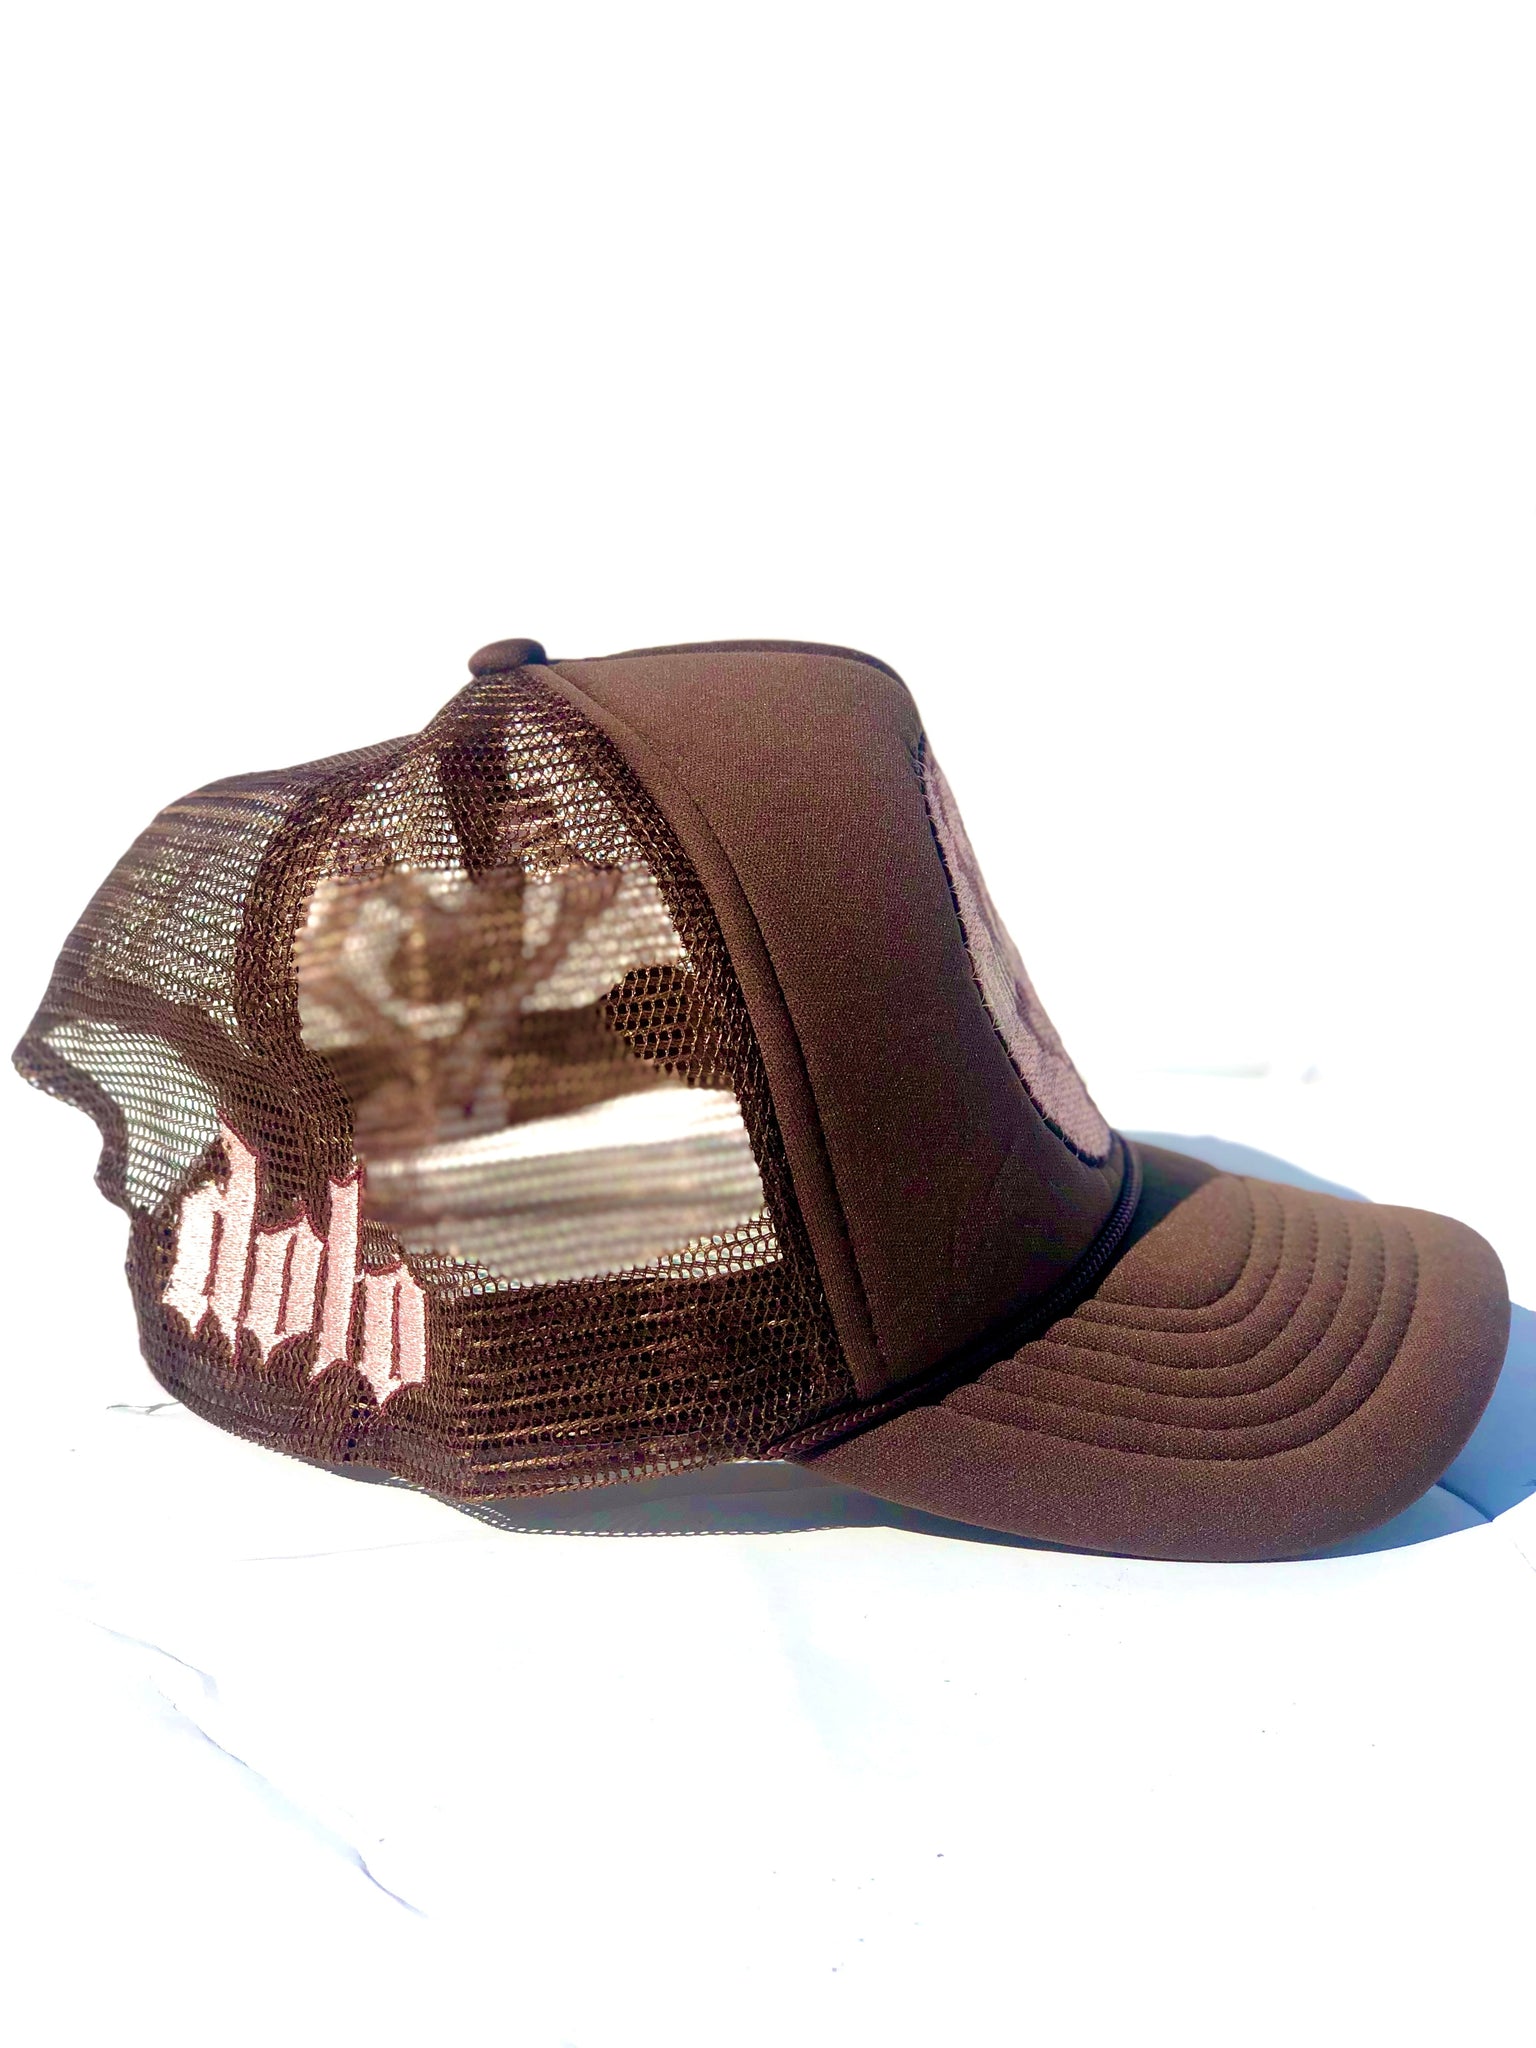 1Dolo Trucker Hat